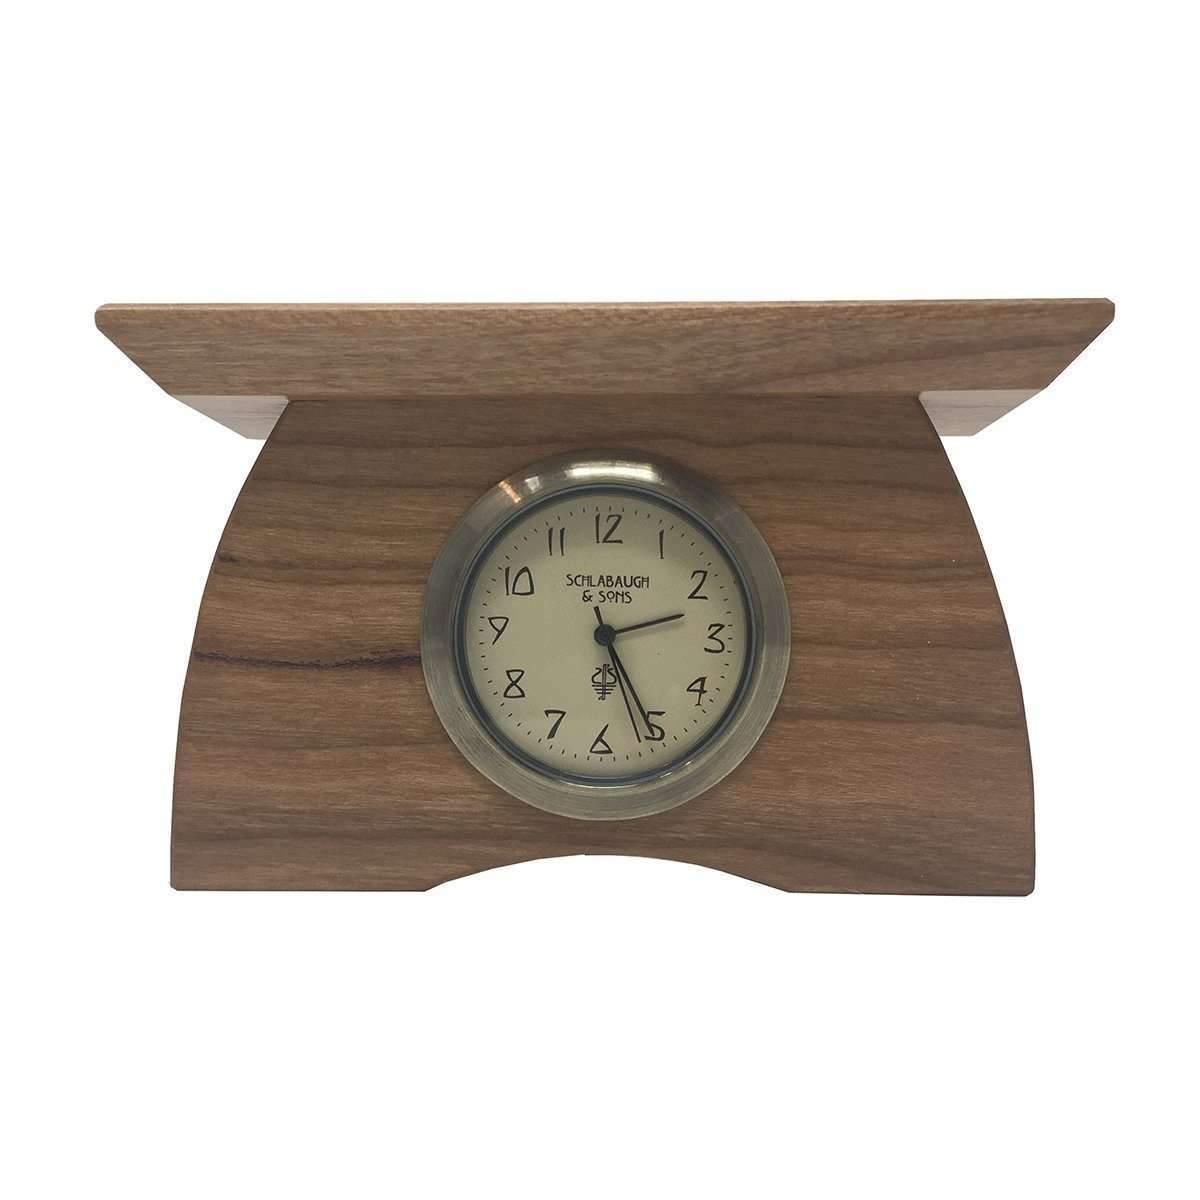 Mini Buffalo Clock Decor Schlabaugh 